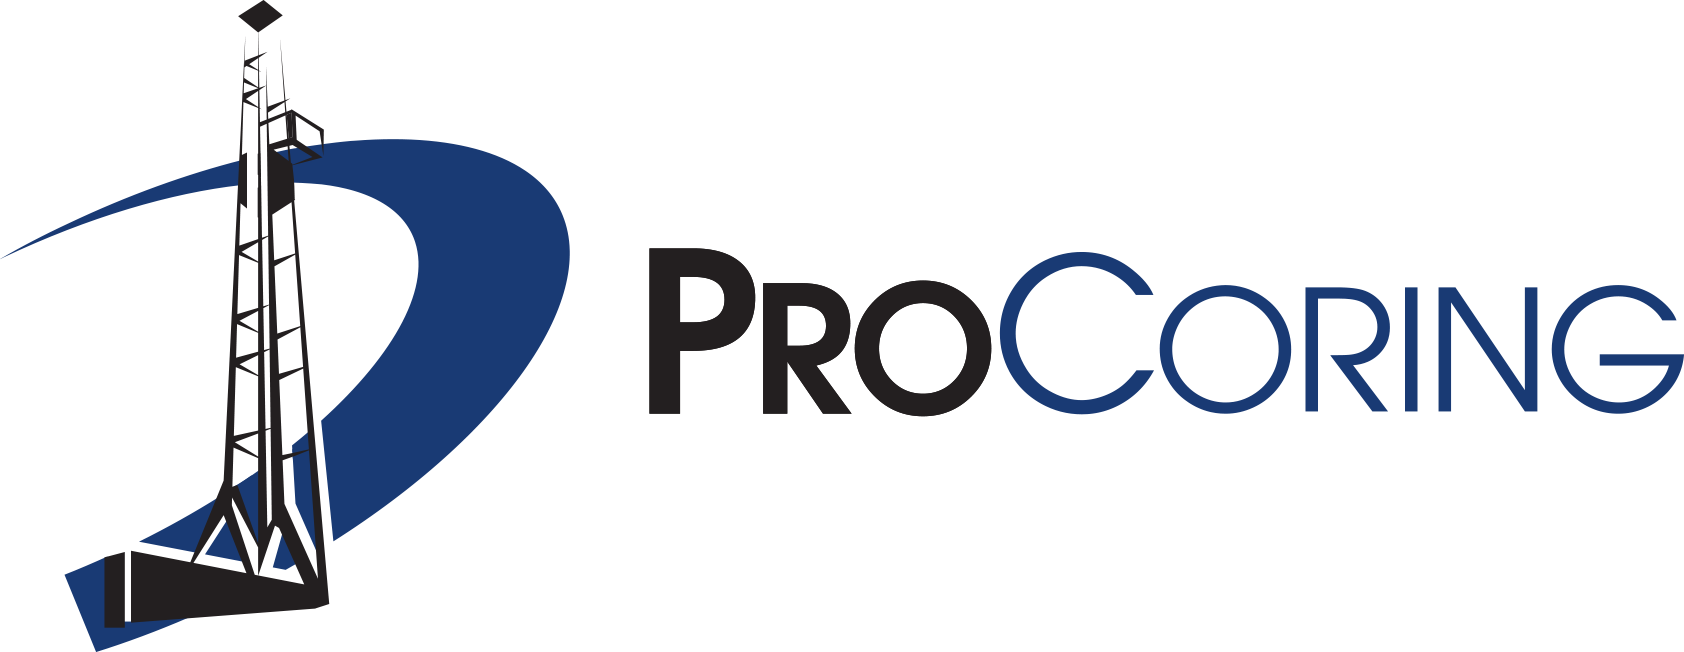 Pro Coring Logo.png